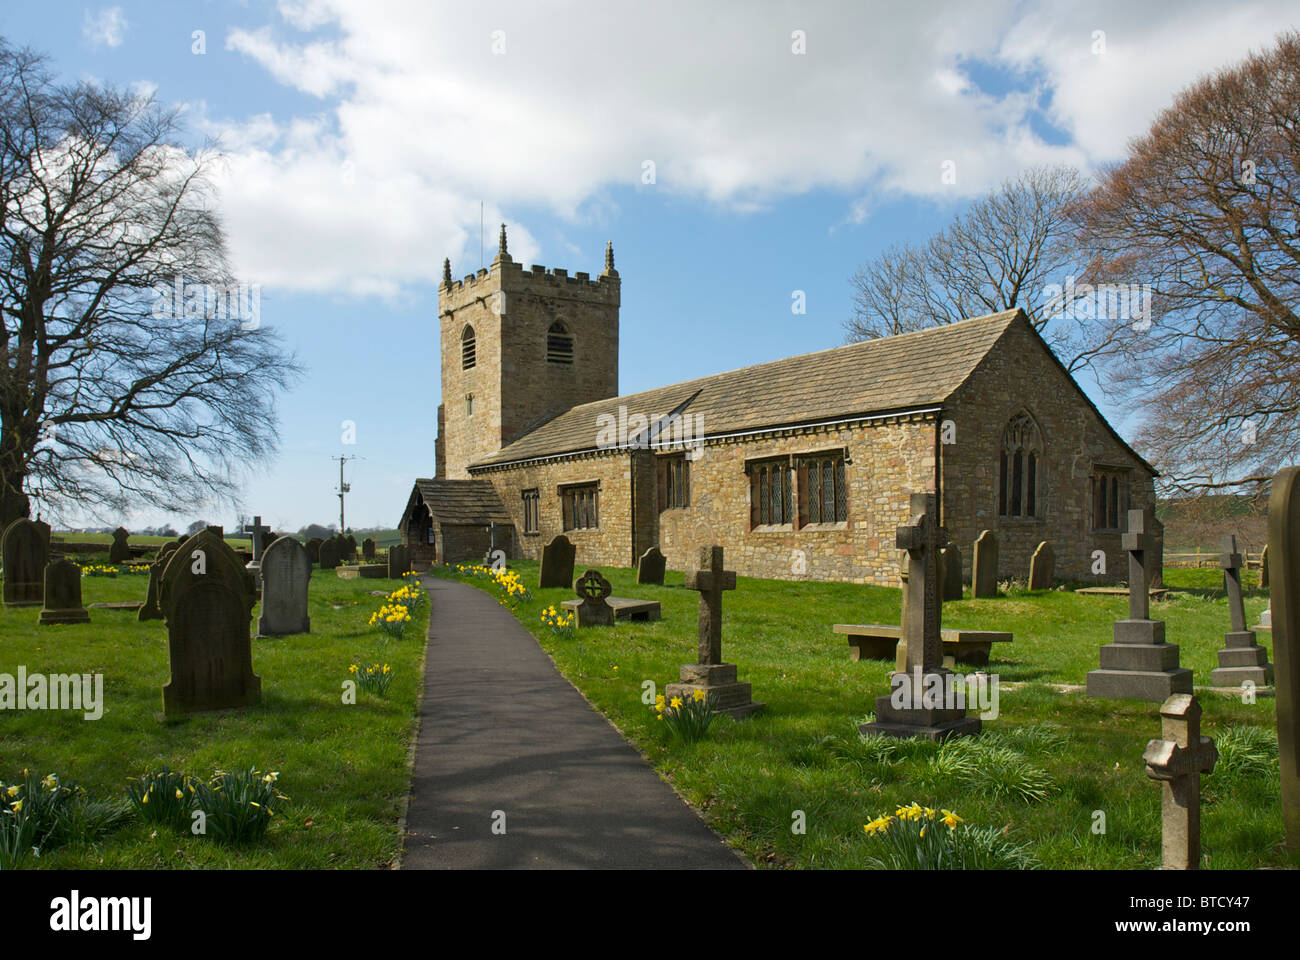 La Iglesia de todos los santos, sirviendo a las parroquias de Broughton & Elslack, cerca de Skipton, North Yorkshire, Inglaterra Foto de stock